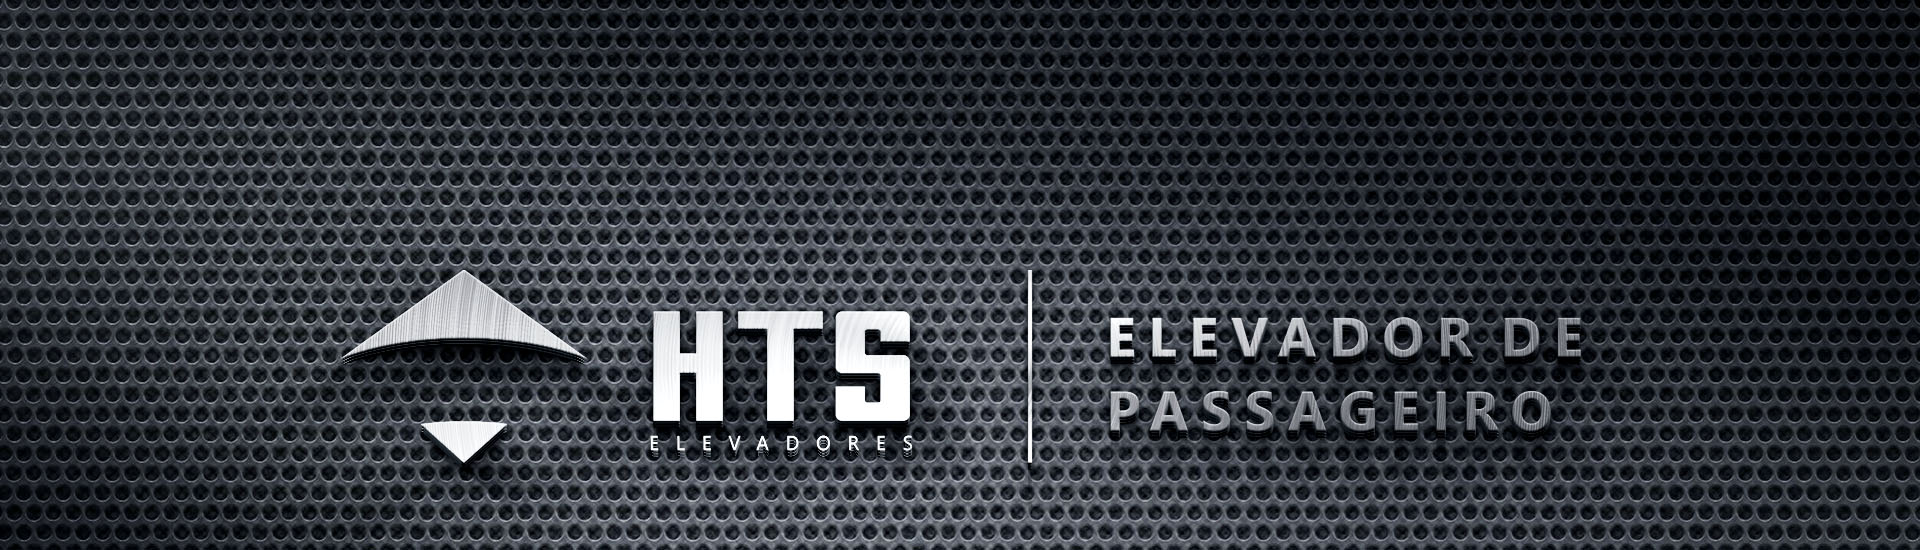 Logo de HTS Elevadores, com a frase Elevador de Passageiro